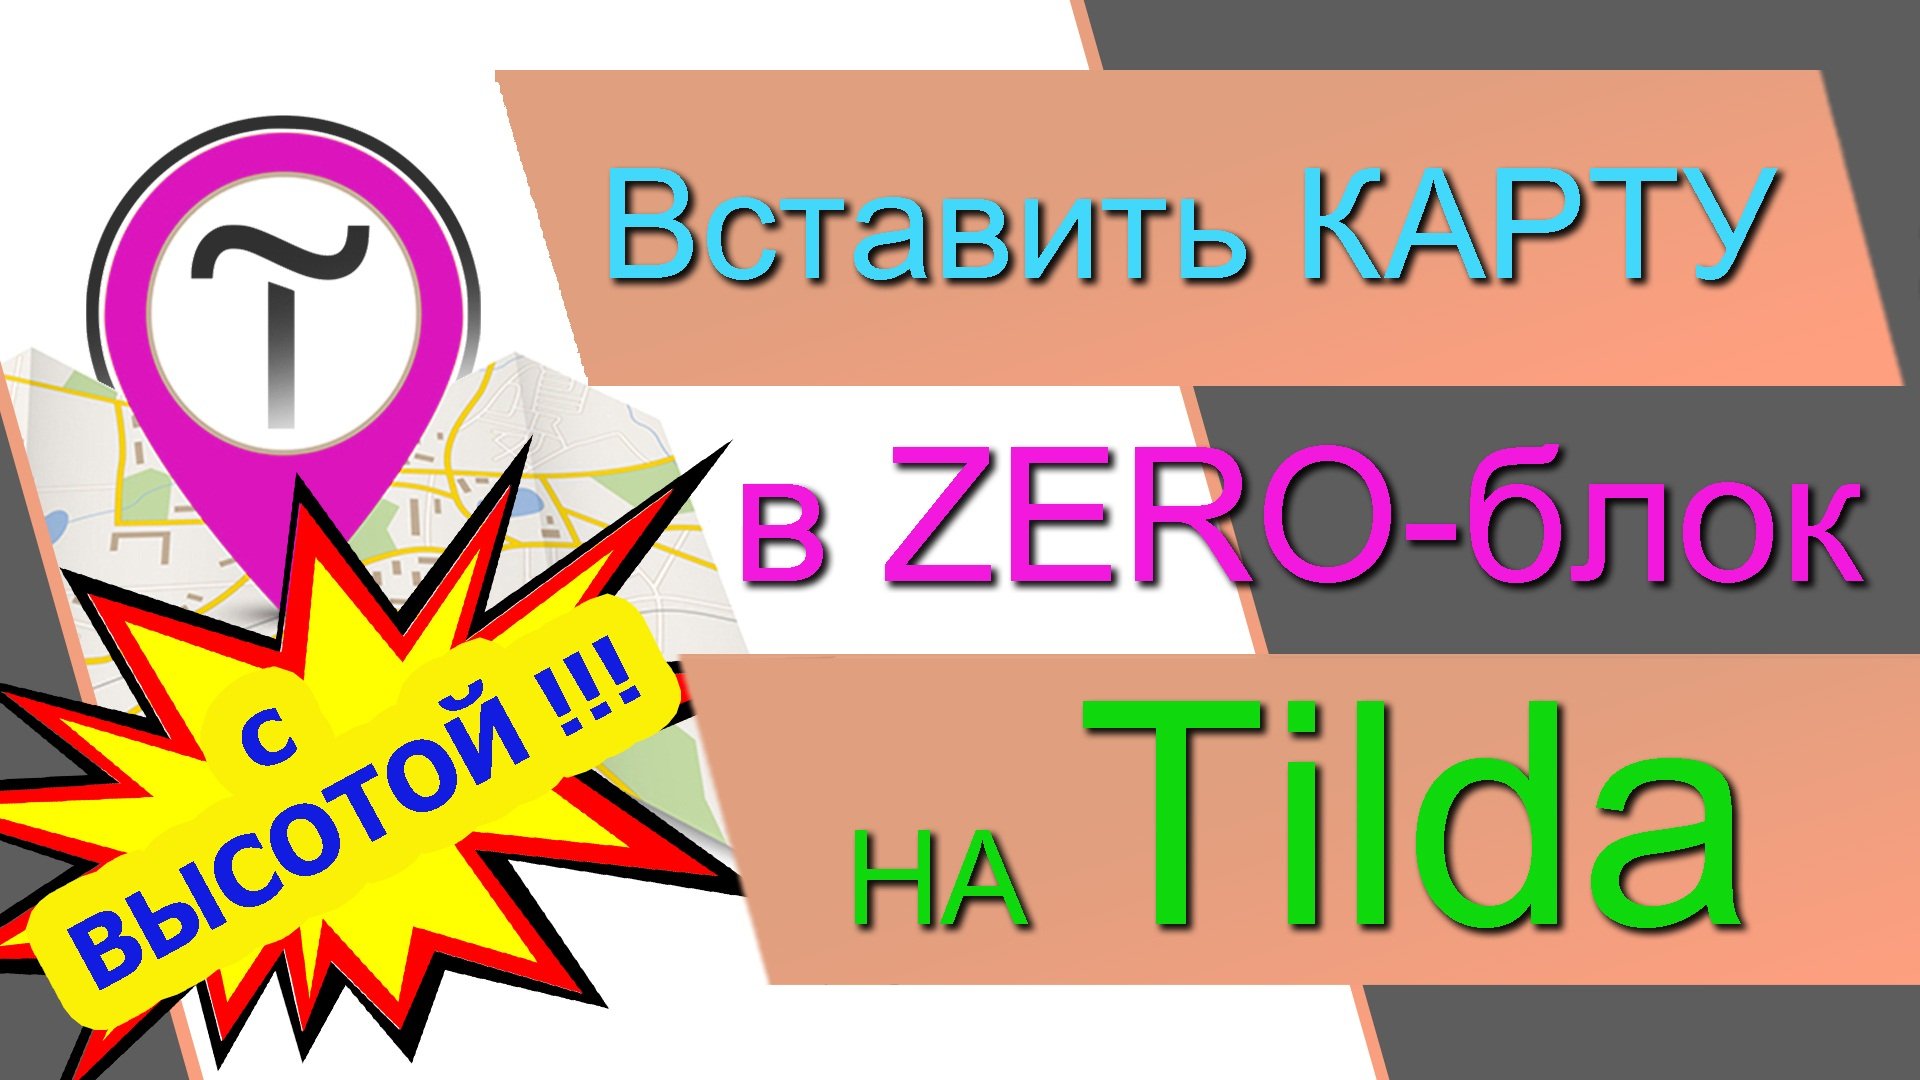 Как вставить КАРТУ в ZERO-блок на Tilda С ВЫСОТОЙ. Яндекс и Google карты в Зеро-блоке на Тильде 100%